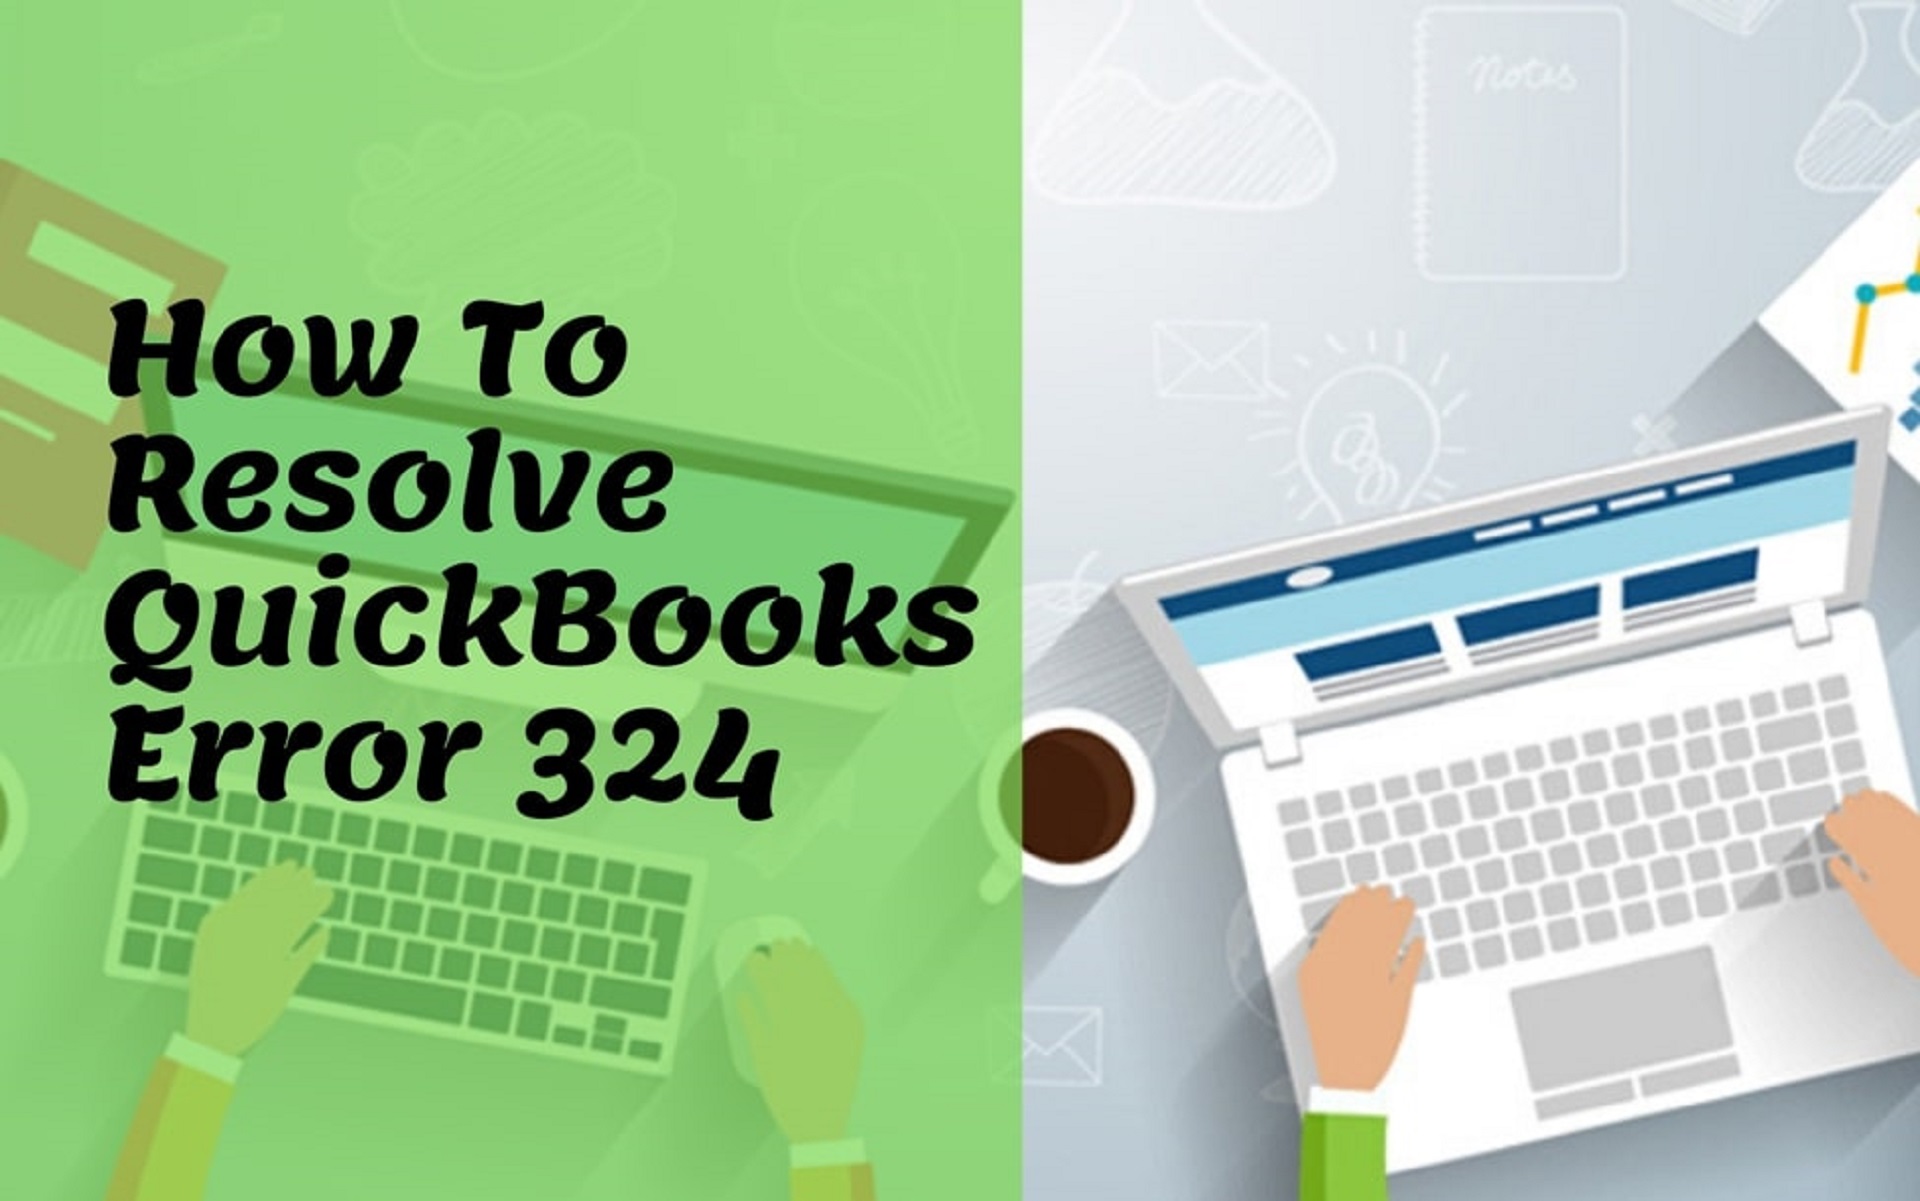 QuickBooks Error 324